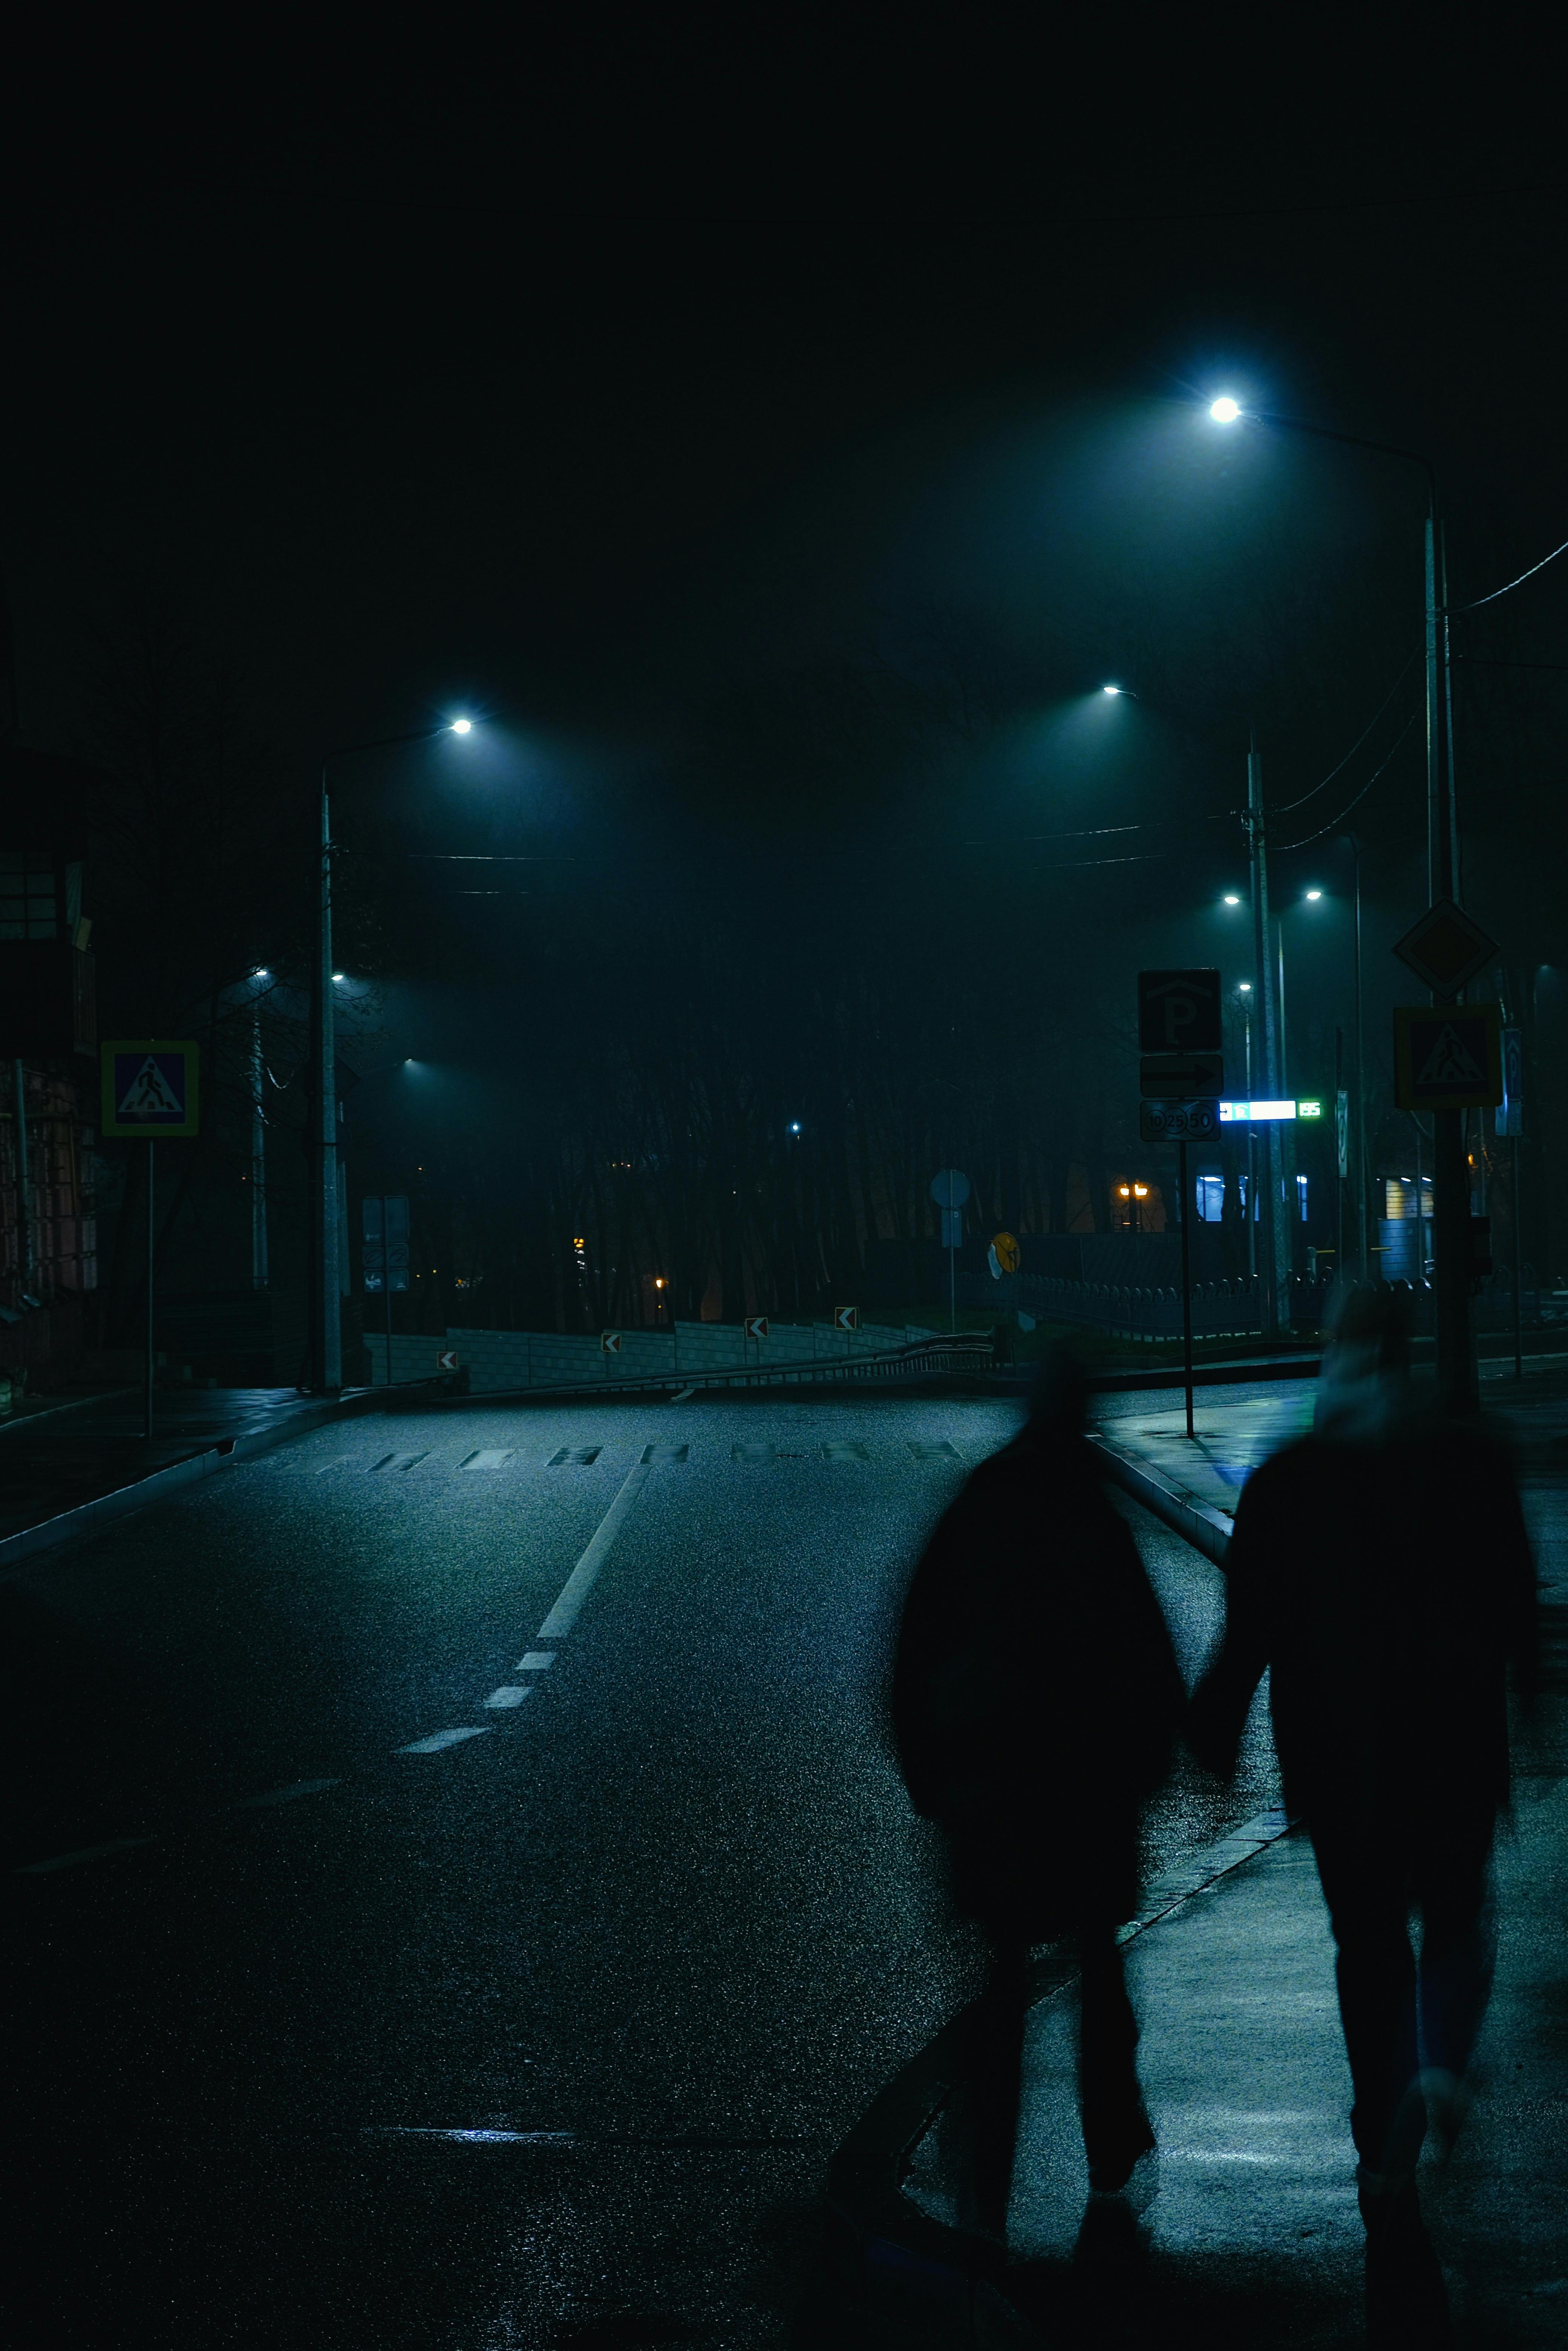 Man in black hat walking on sidewalk during night time photo – Free  Cambridge Image on Unsplash